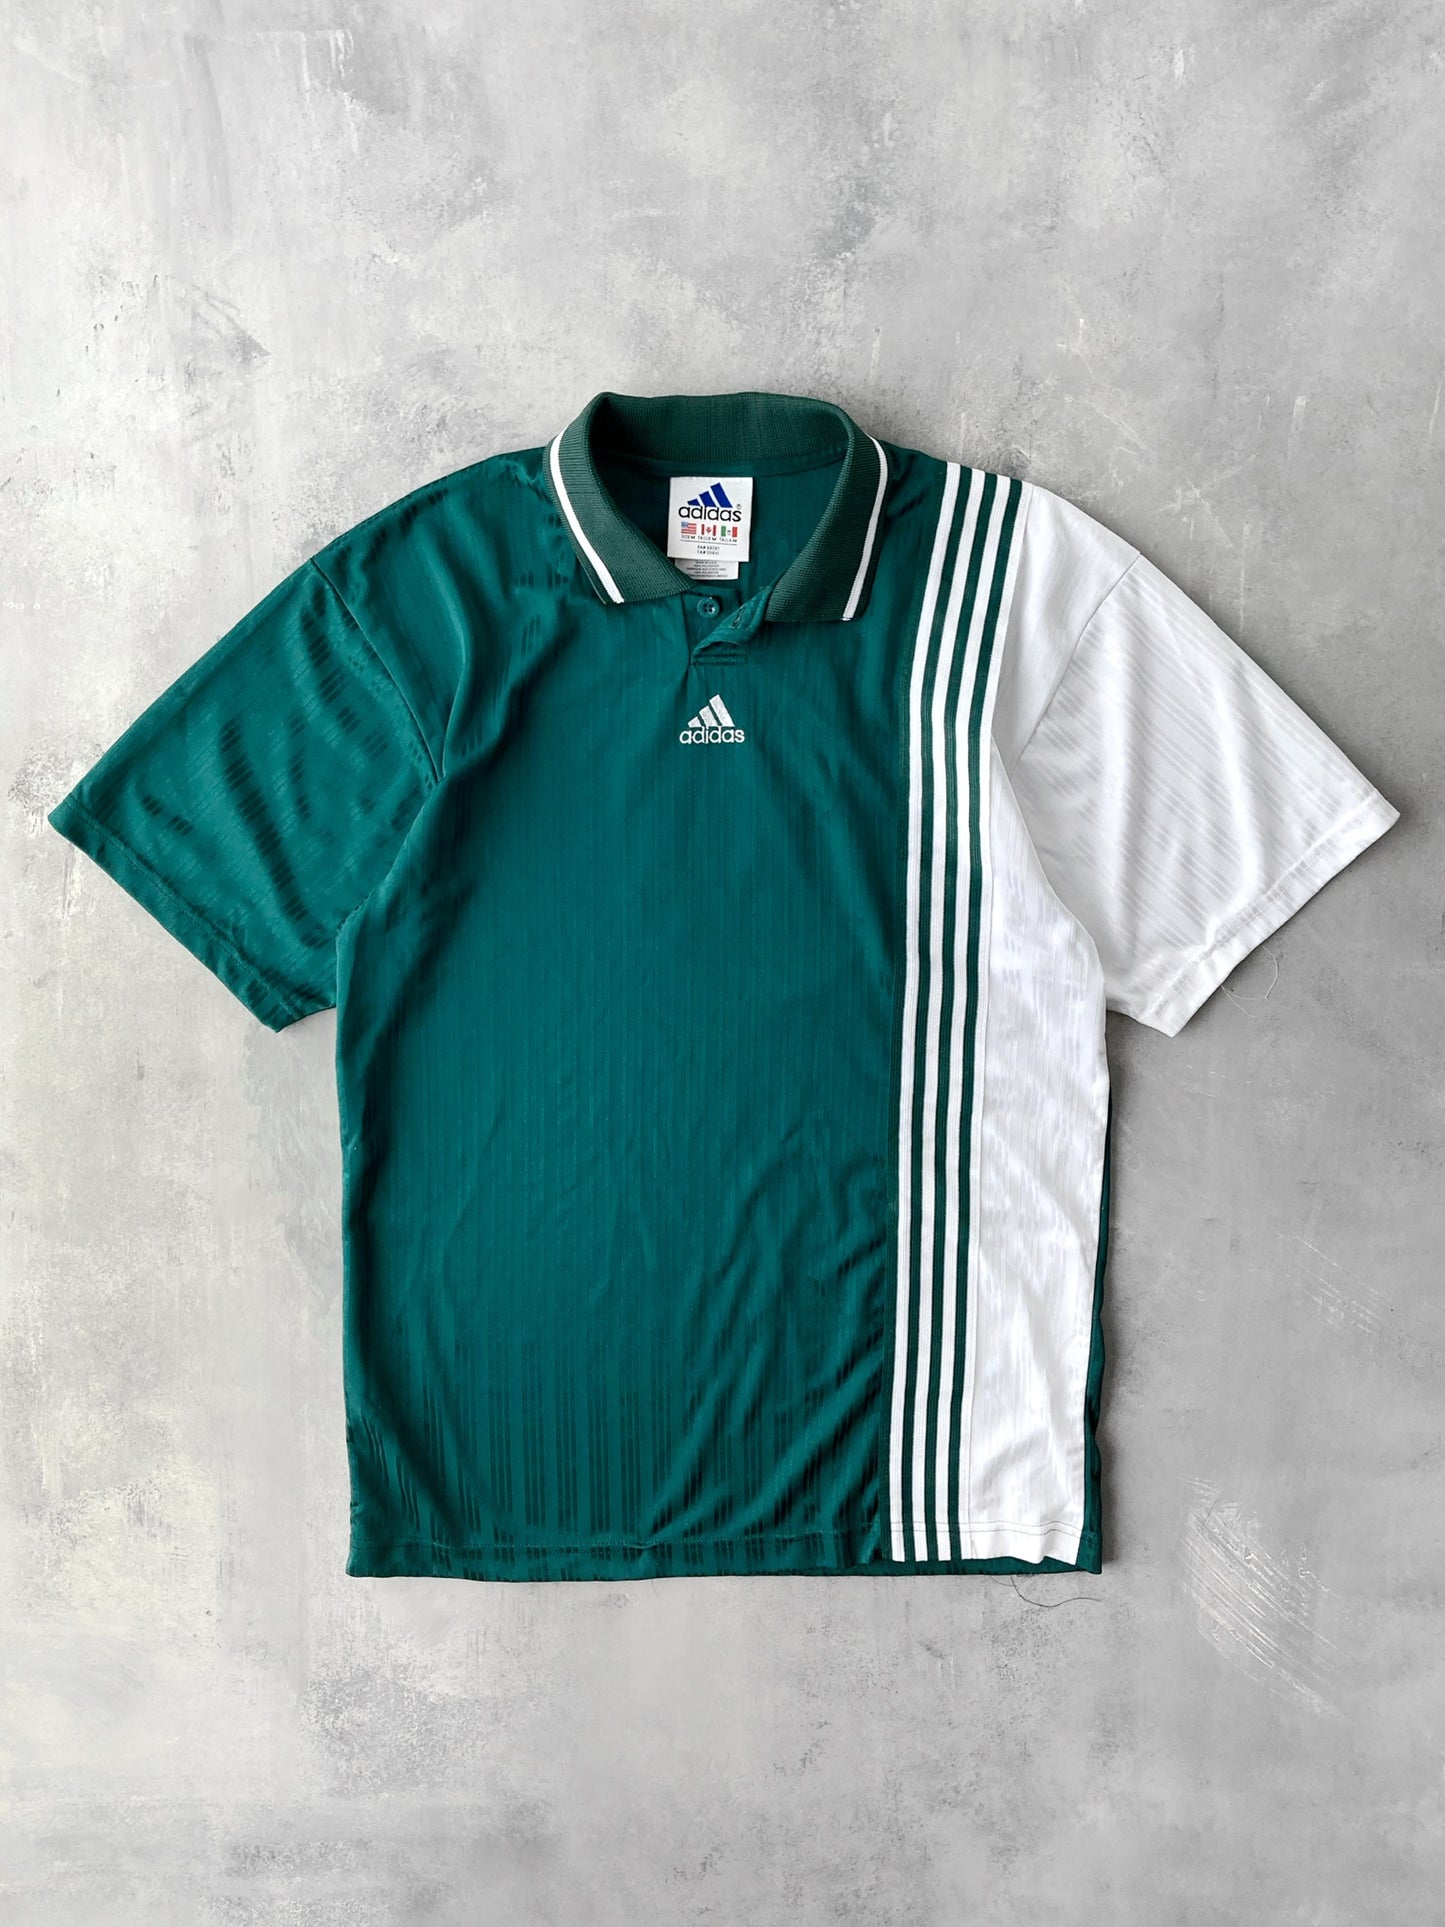 Adidas Soccer Jersey 90's - Medium